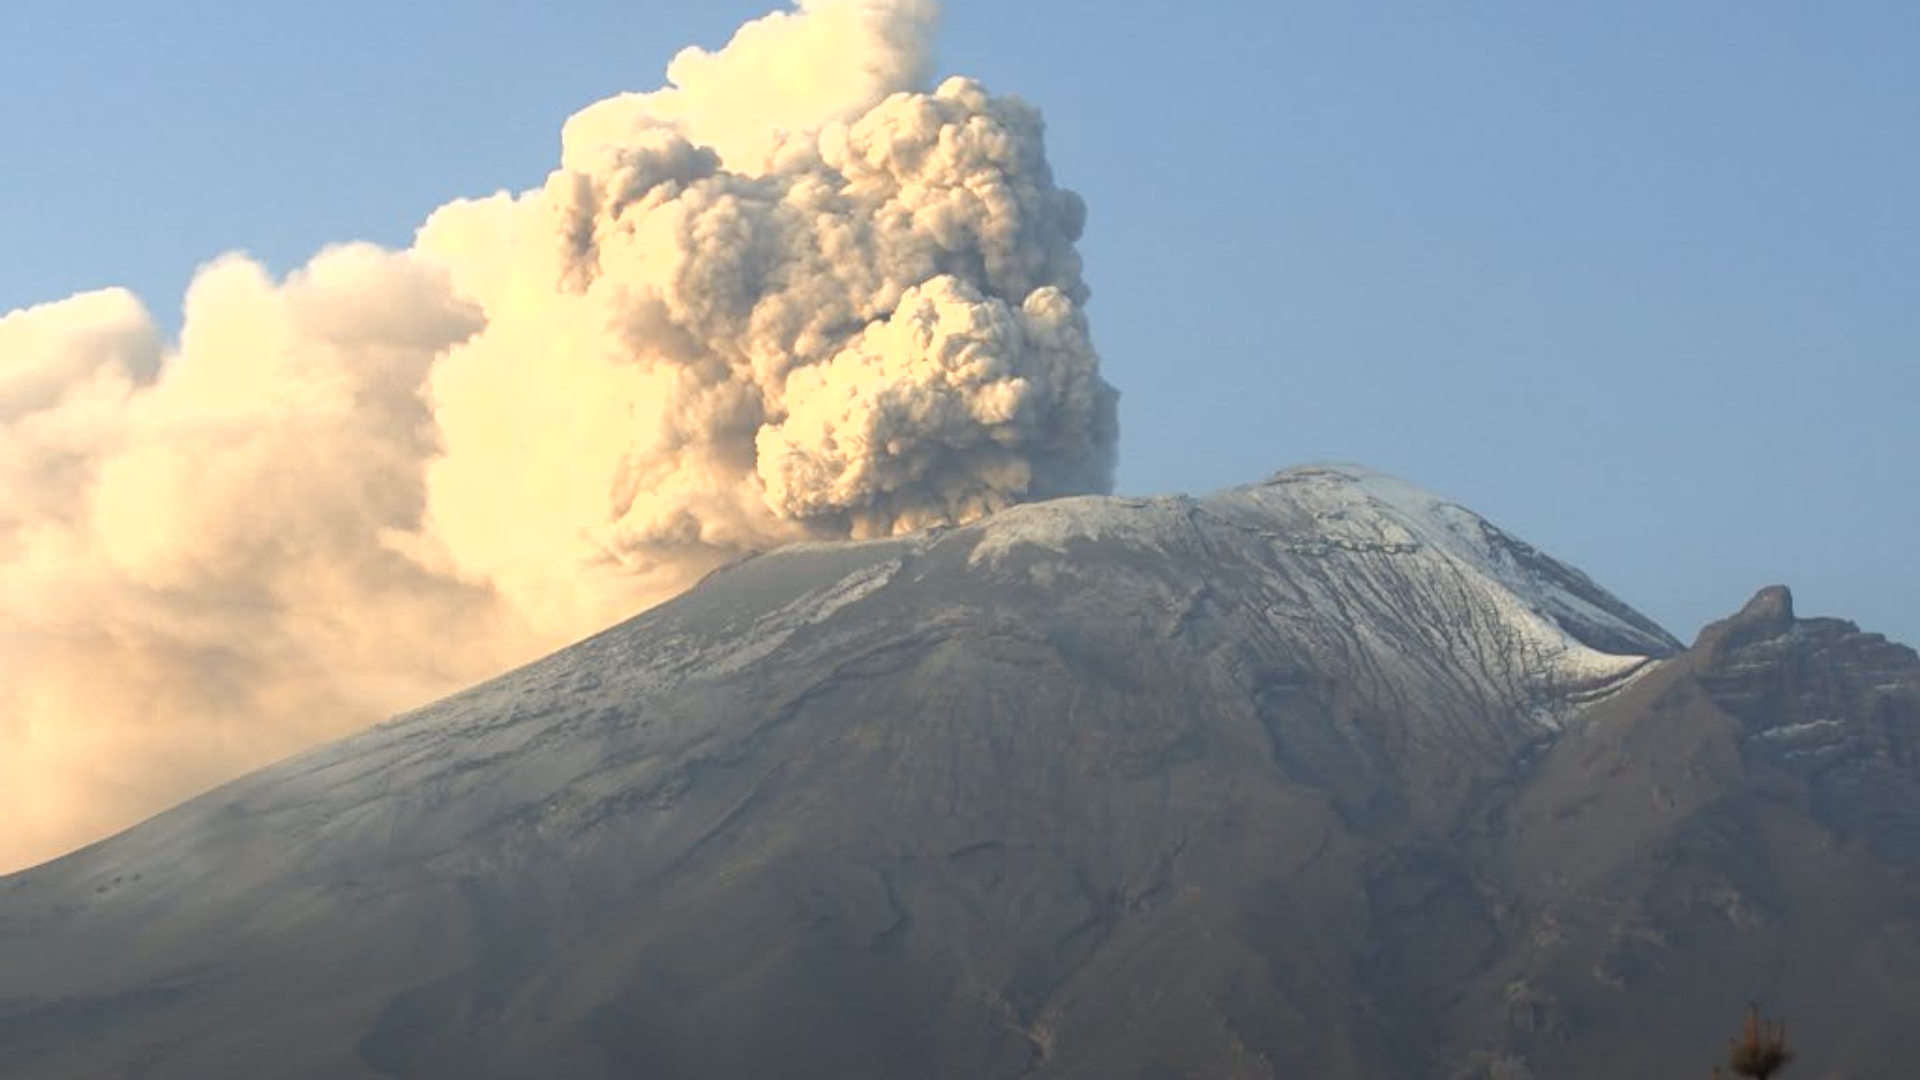 Volcán Popocatépetl hoy 27 de mayo: se reportaron emisiones de ceniza con vapor y bombas de lava